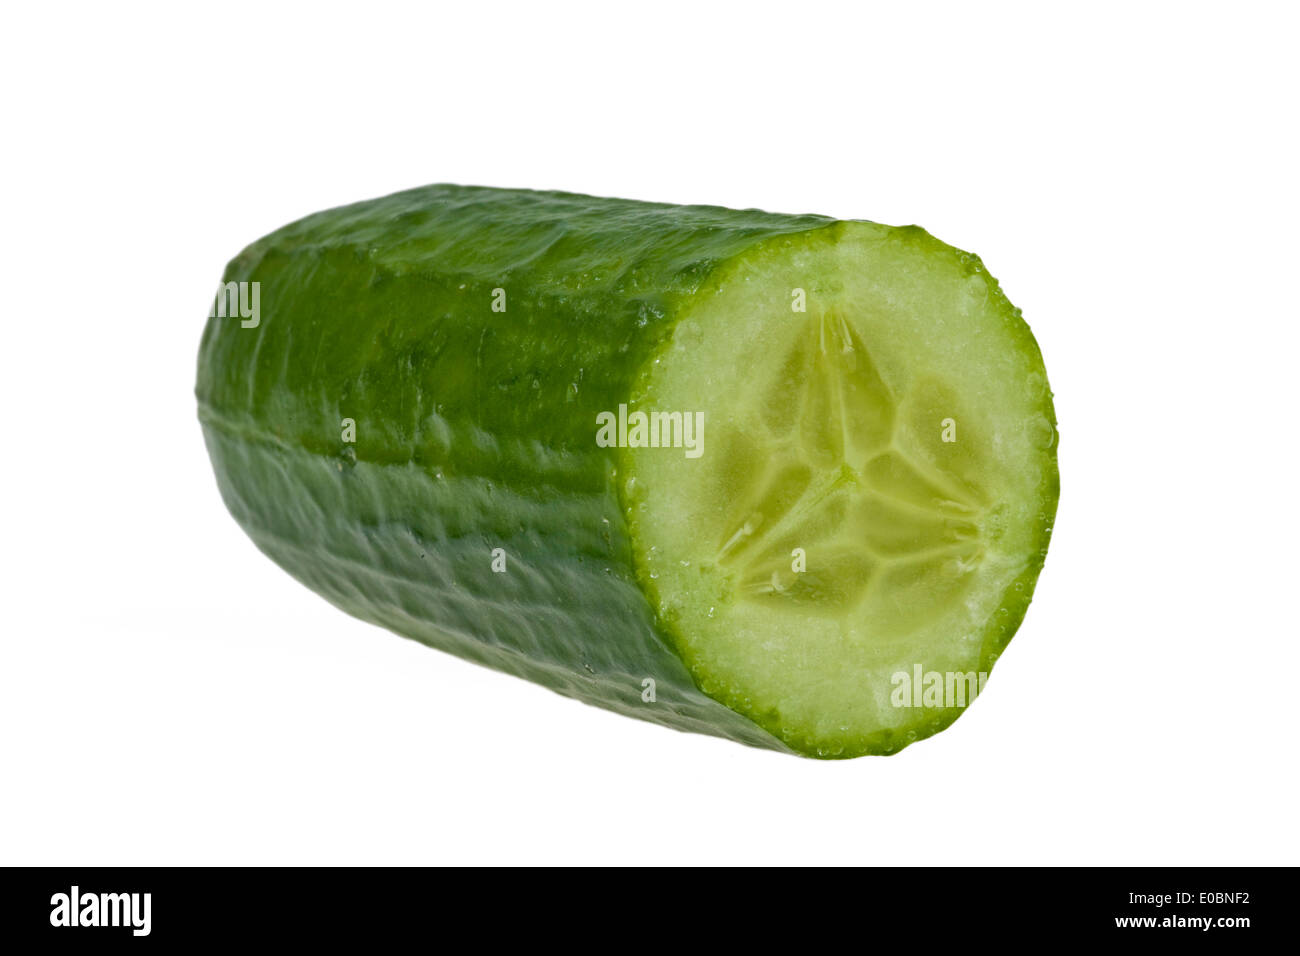 A cucumber lies on a white background, Eine Gurke liegt auf einem weissen Hintergrund Stock Photo